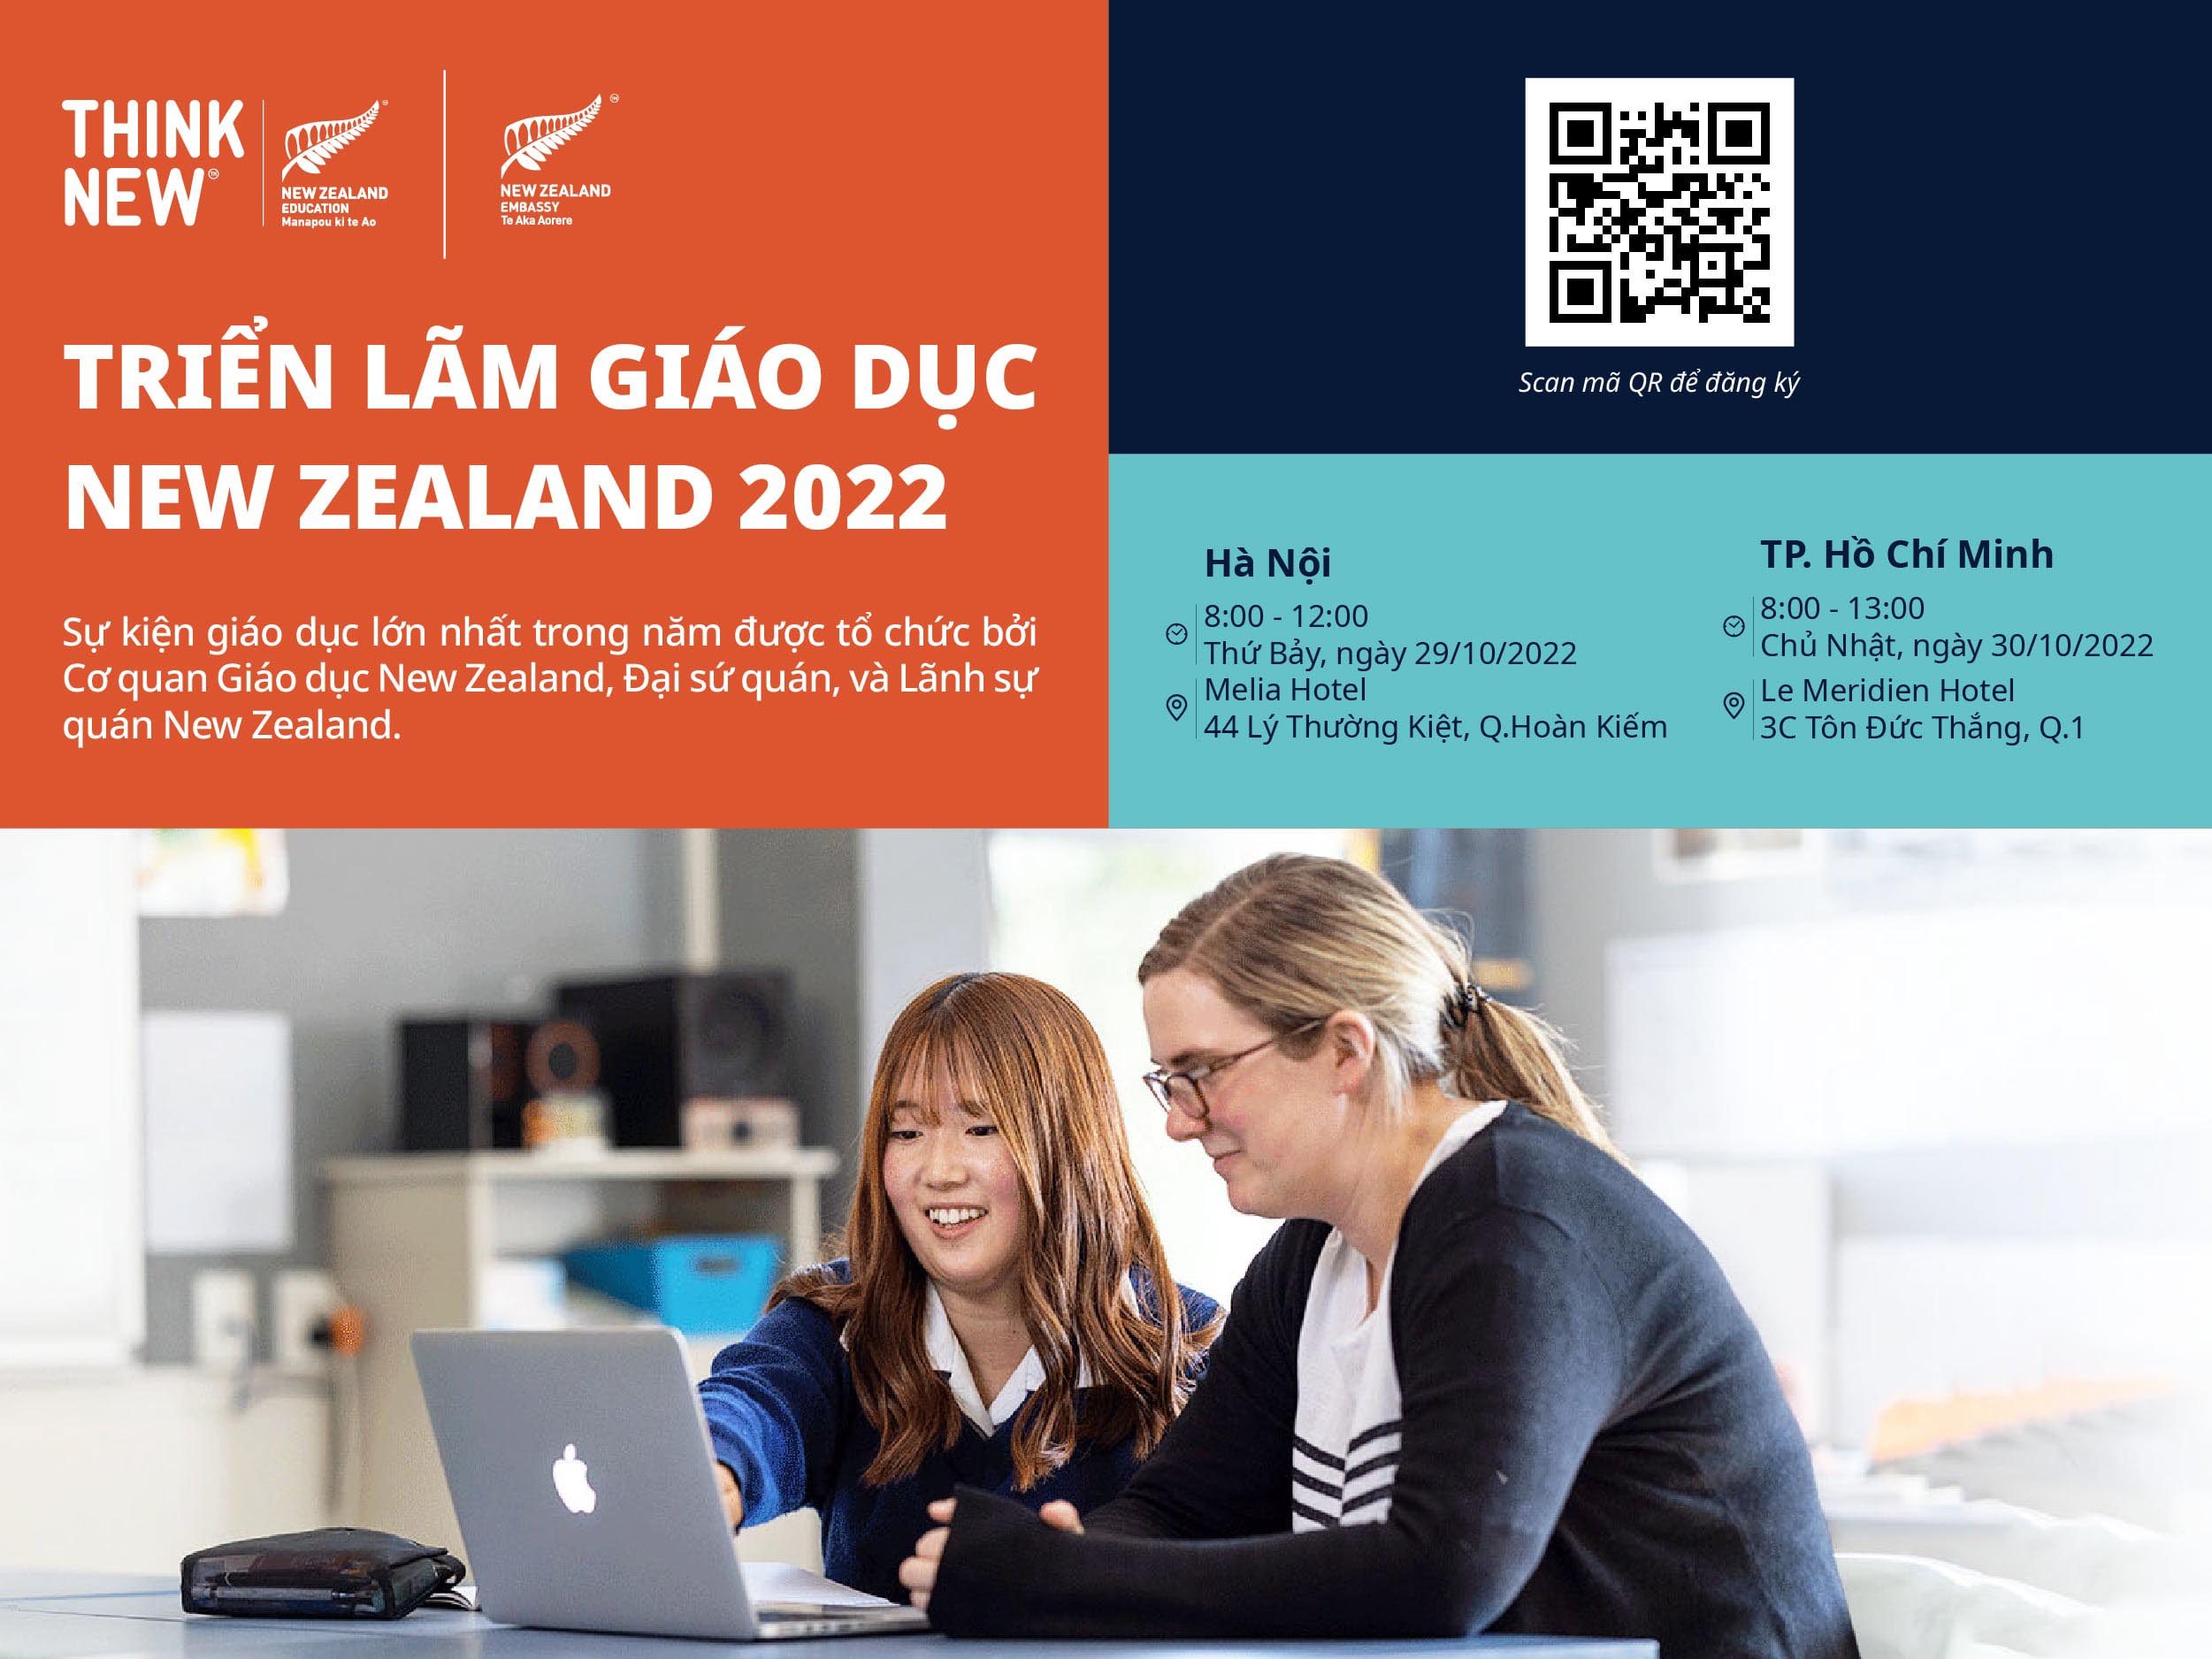 Triển lãm giáo dục New Zealand sẽ trở lại ở TPHCM và Hà Nội vào cuối tháng 10